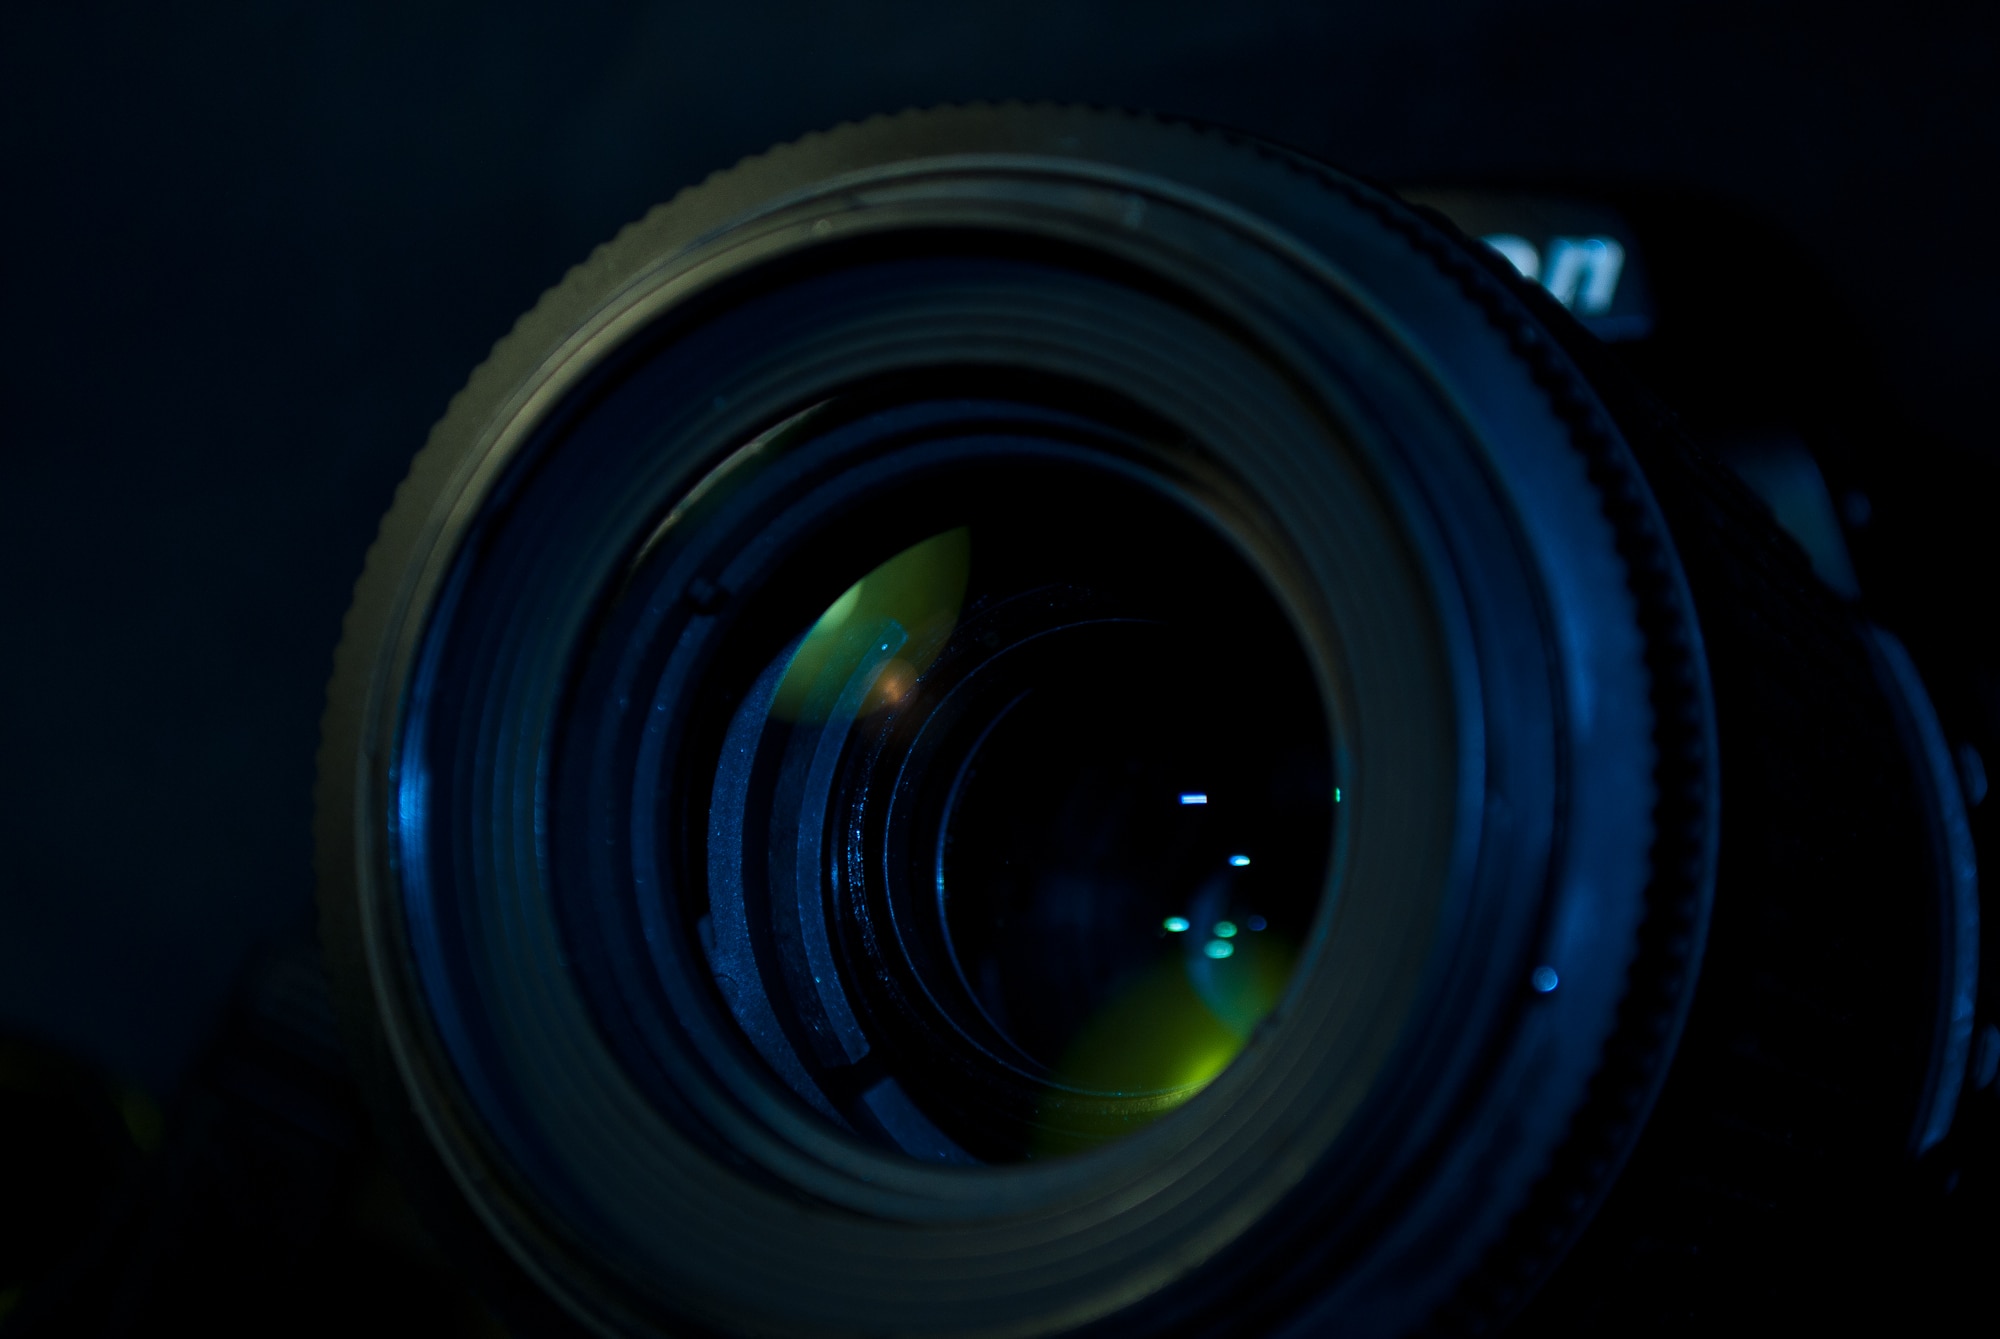 close up photo of a camera lens